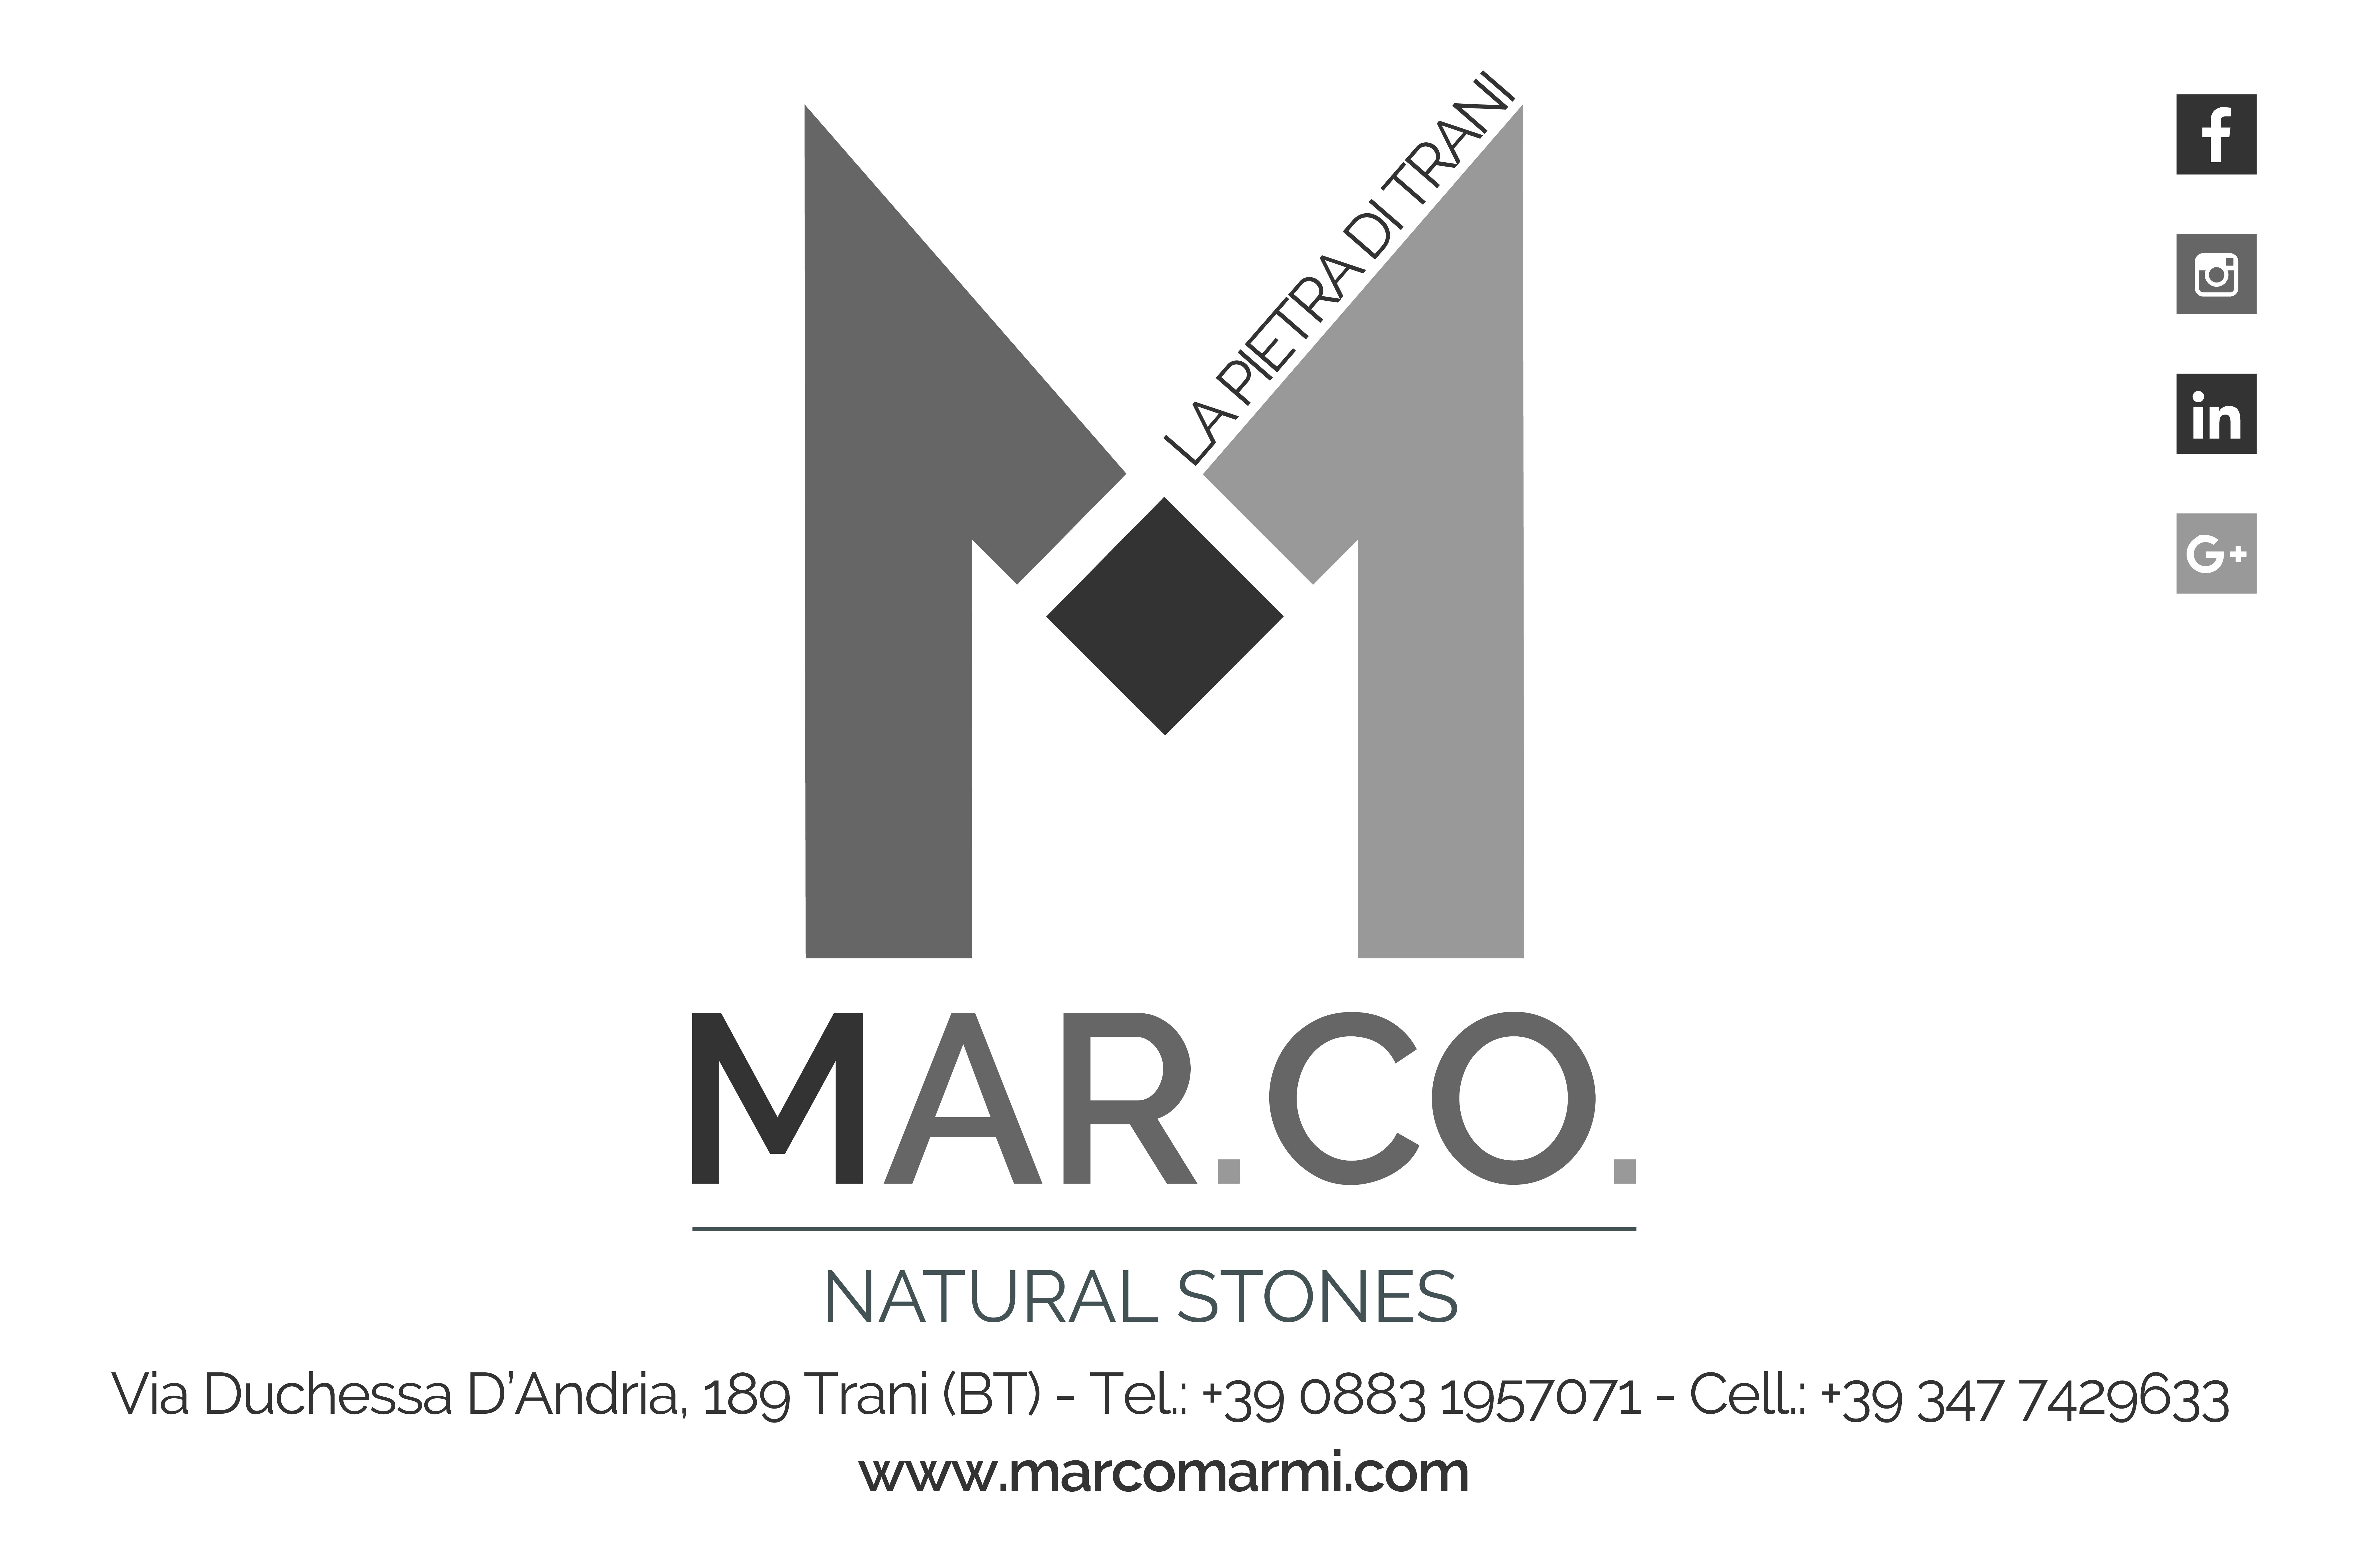 MAR.CO. Natural Stones